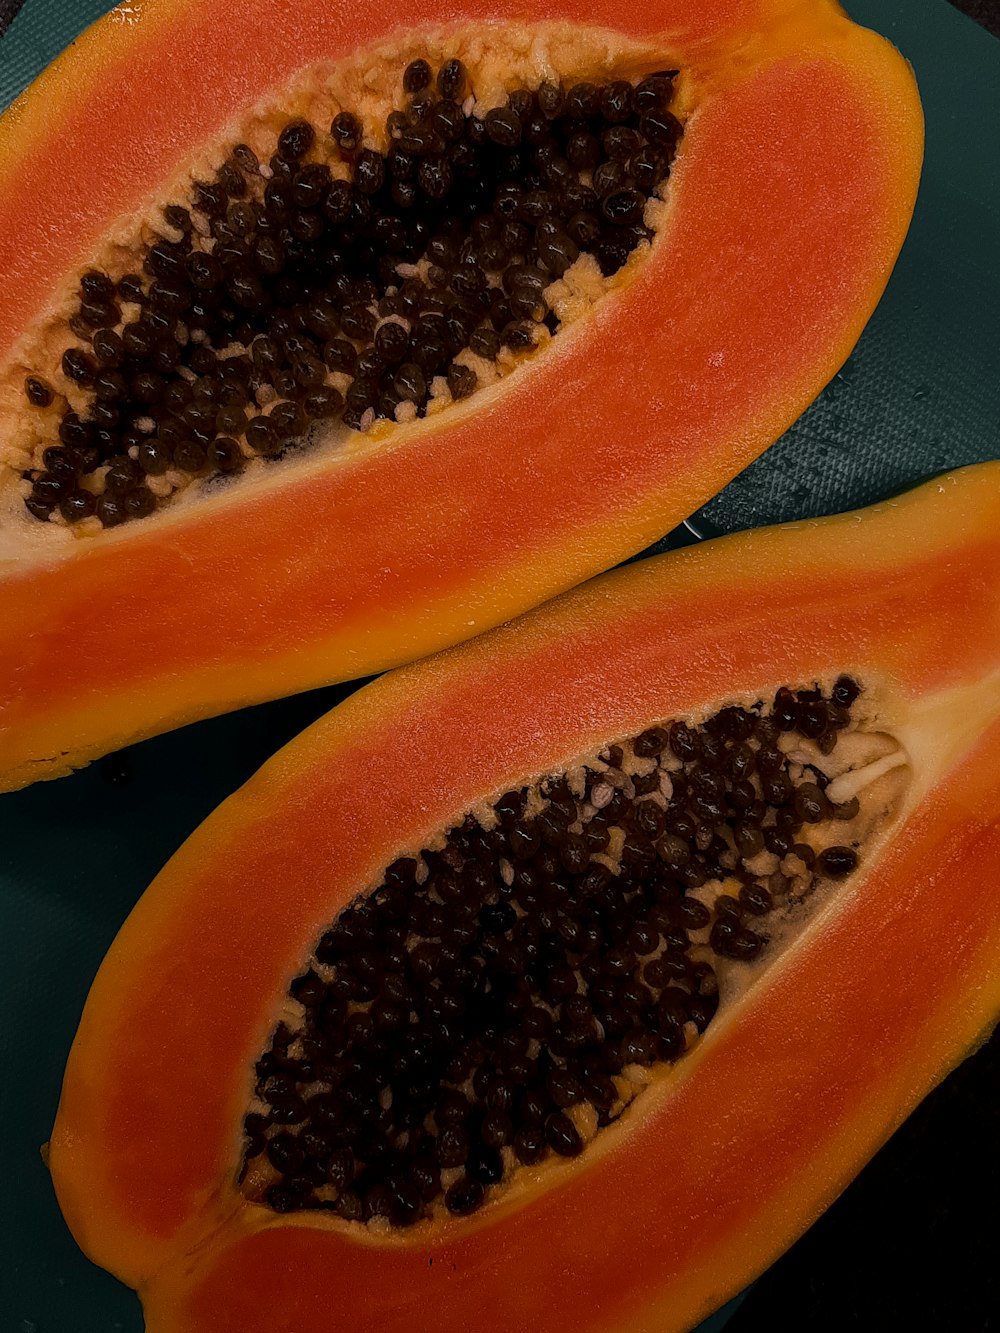 a papaya cut in half on a cutting board